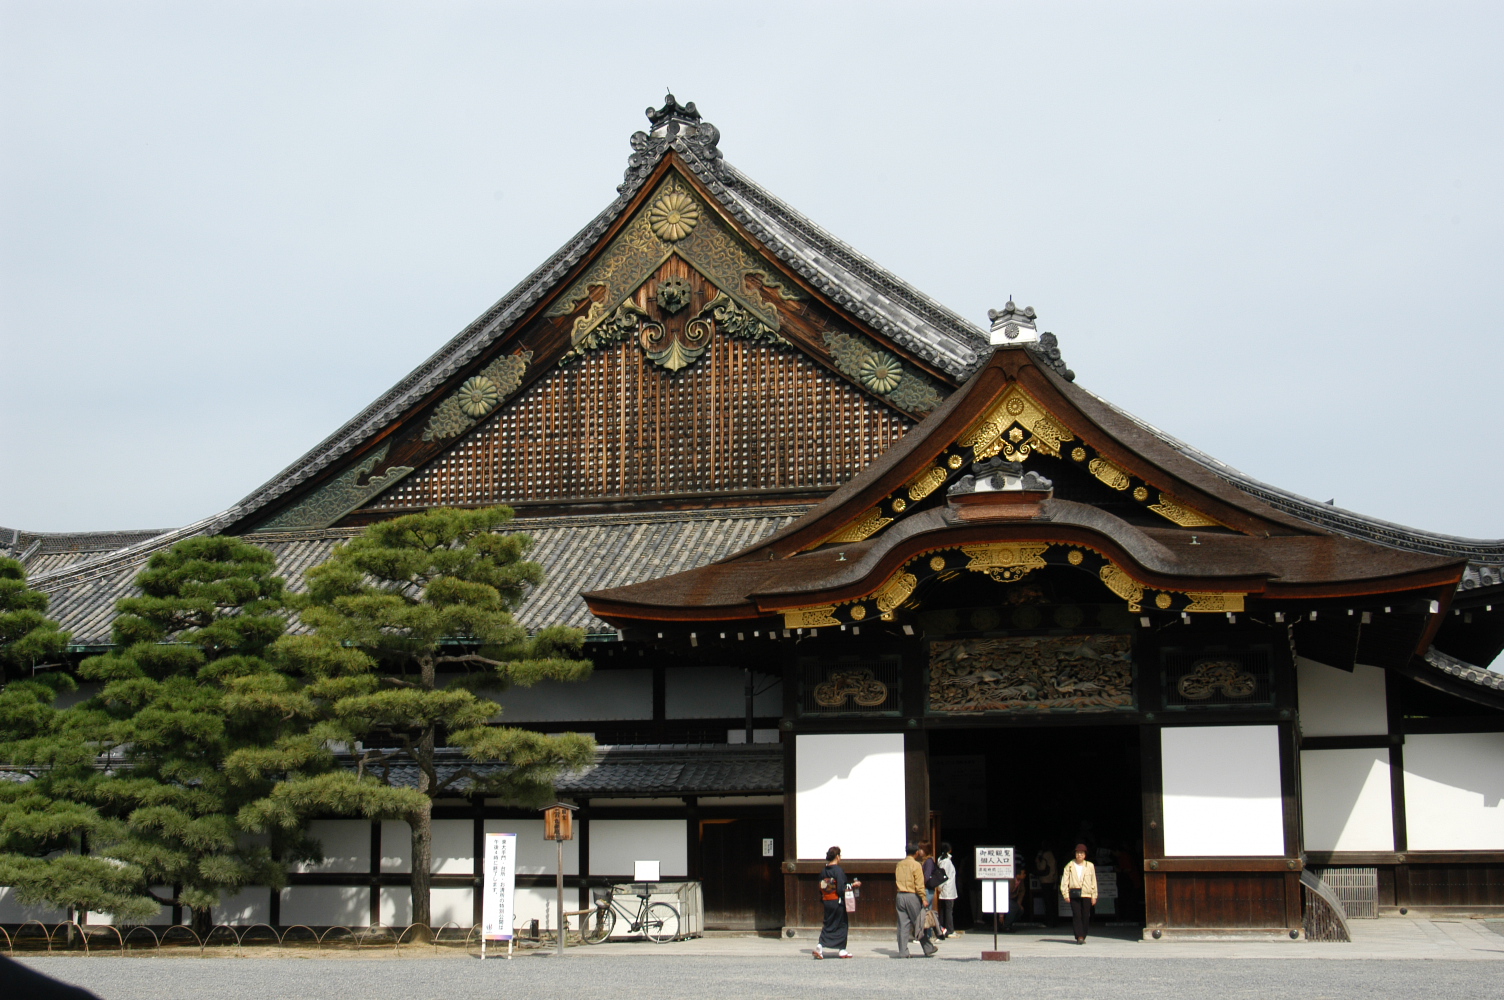 设计者:不详   结构及主要材料:木结构   风格:日本中世纪宫殿建  